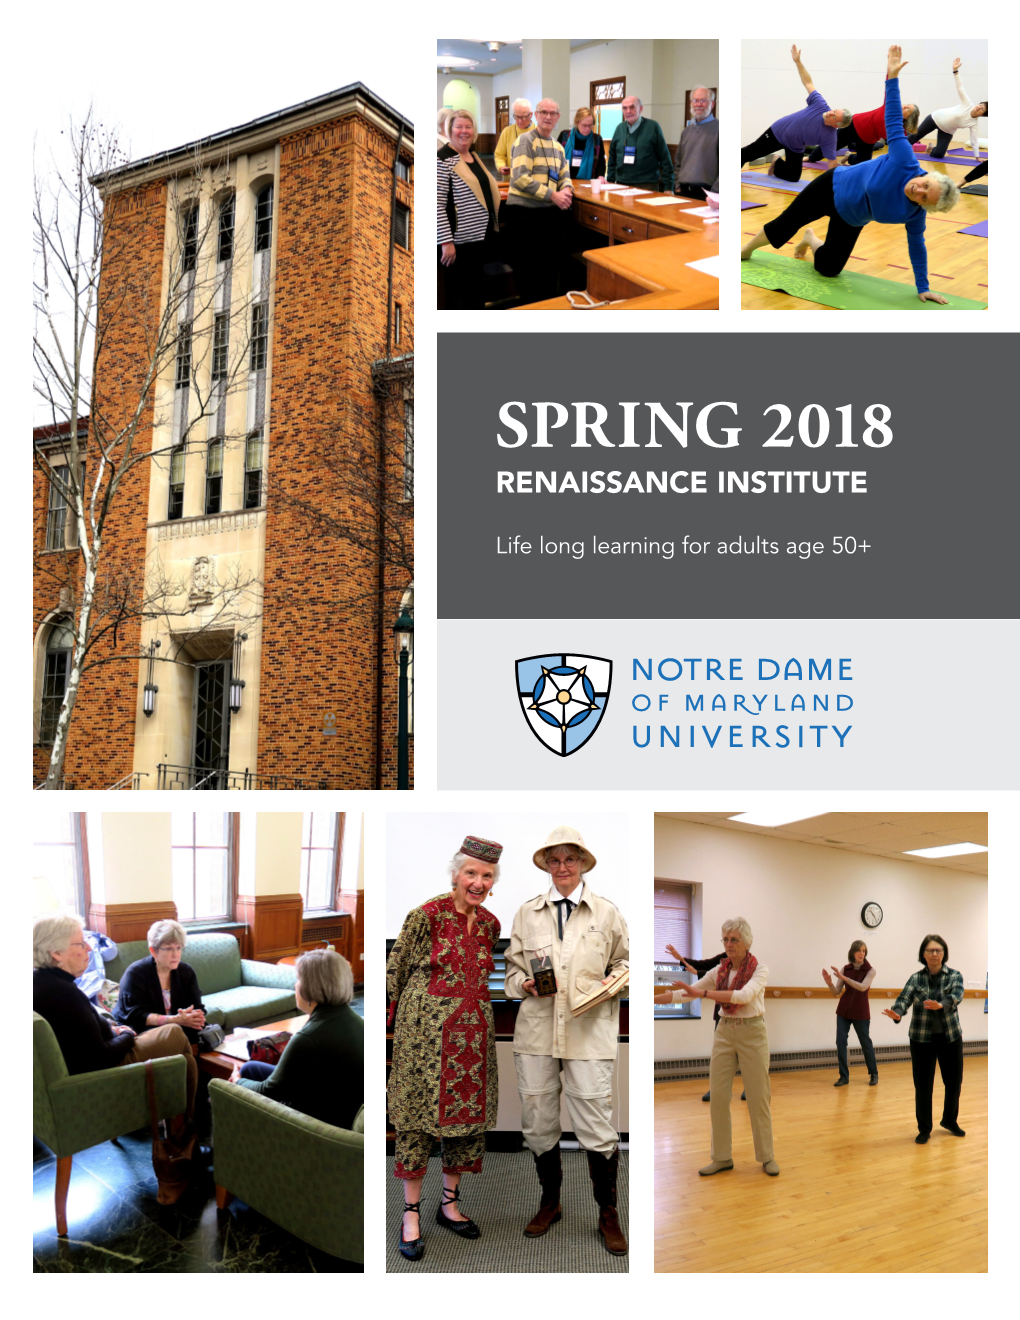 Spring 2018 Renaissance Institute